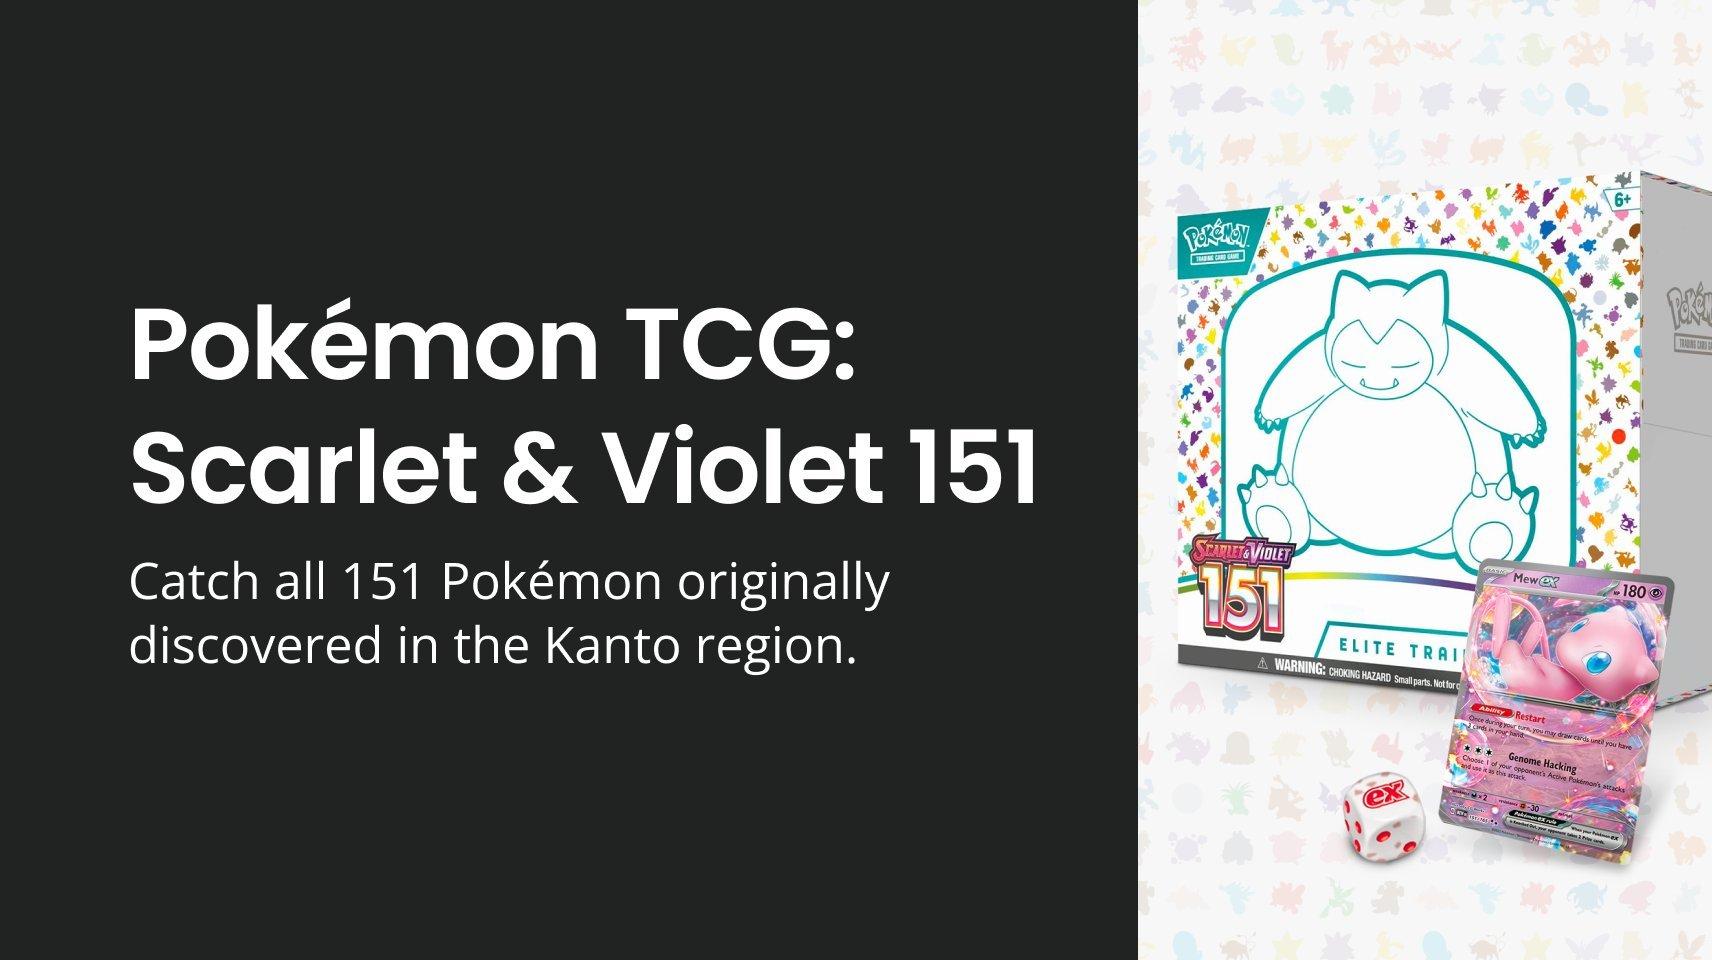 Pokémon TCG: Scarlet & Violet 151